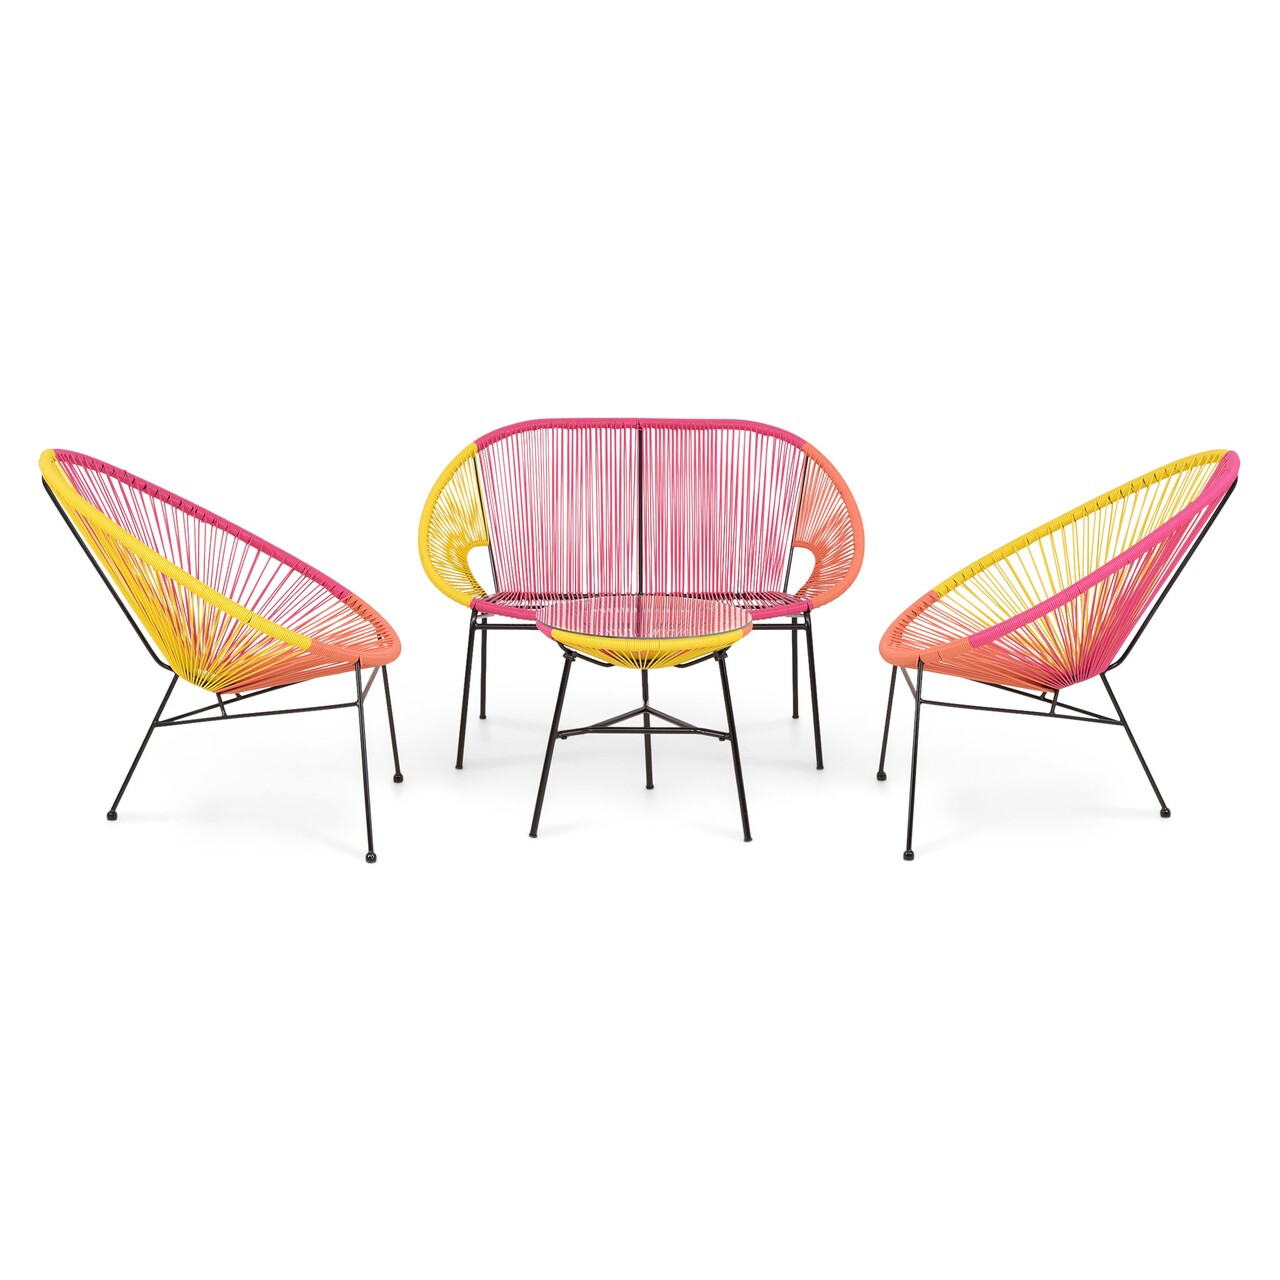 Corfu kerti/terasz asztalka, 2 db fotel és kanapé, acél, sárga/narancssárga/piros